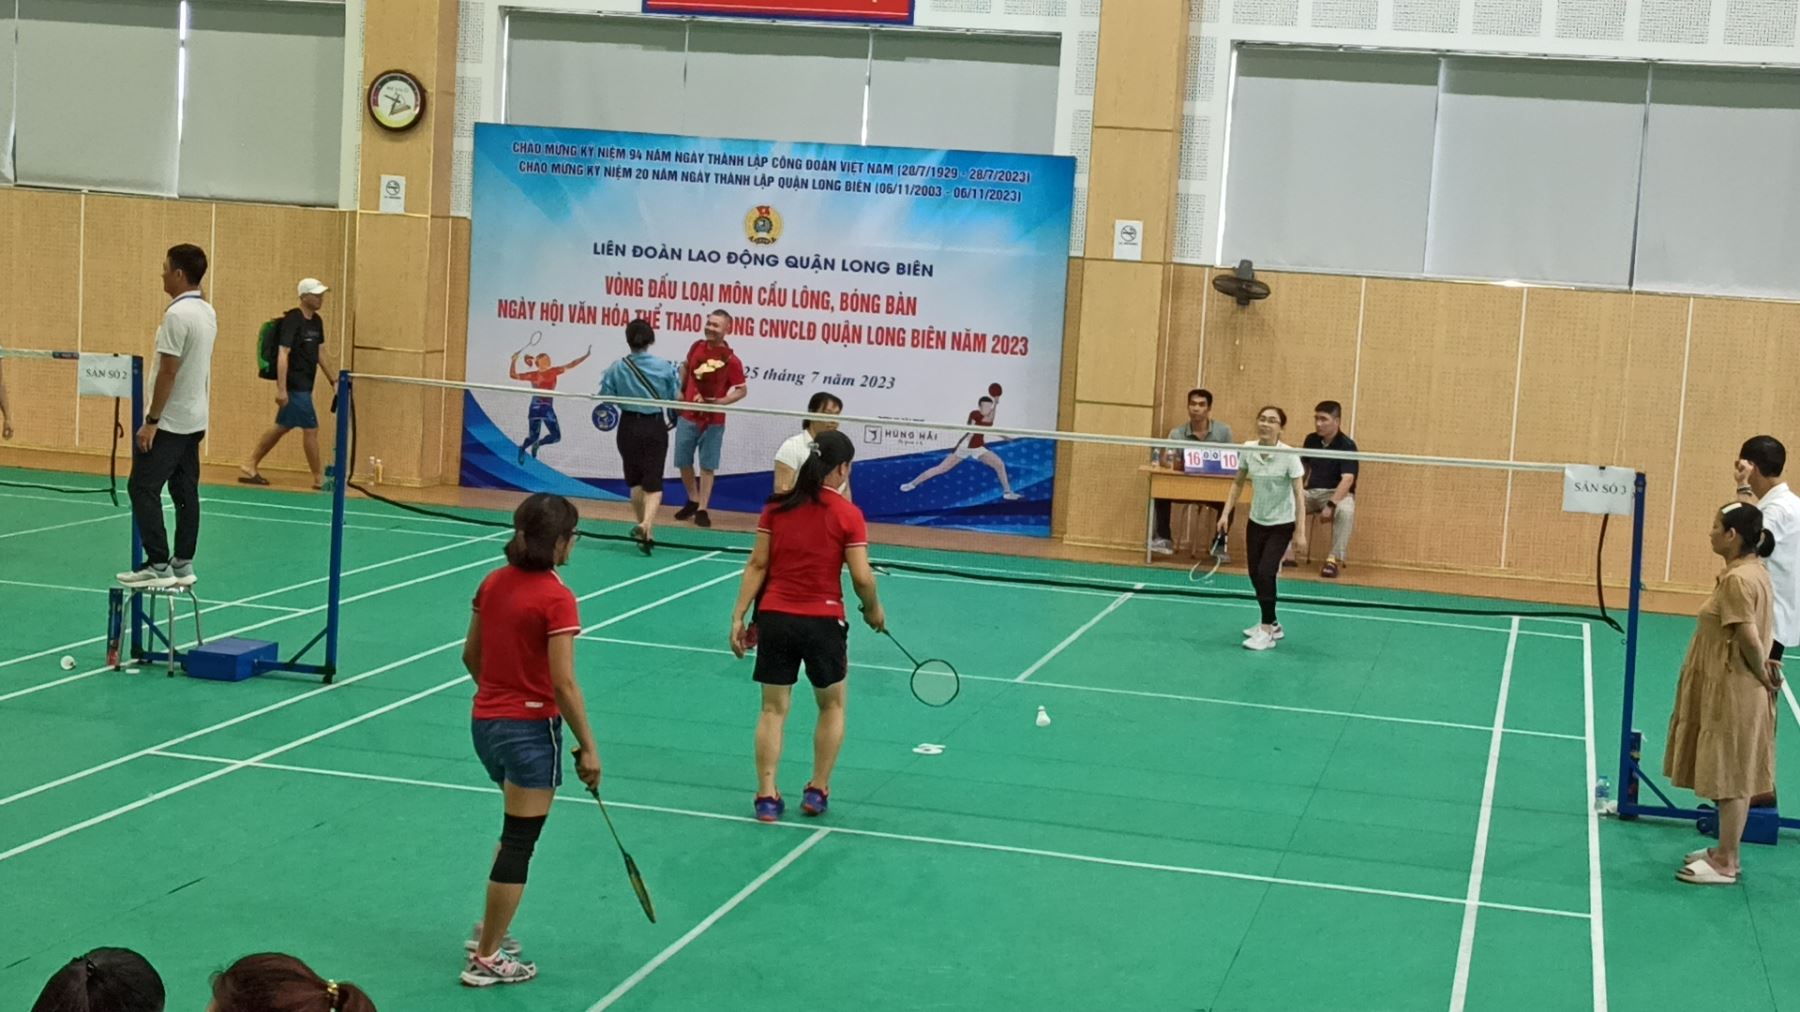 Vận động viên cầu lông Trường MN Ánh Sao tham gia Ngày hội văn hóa thể thao trong CNVCLĐ quận Long Biên